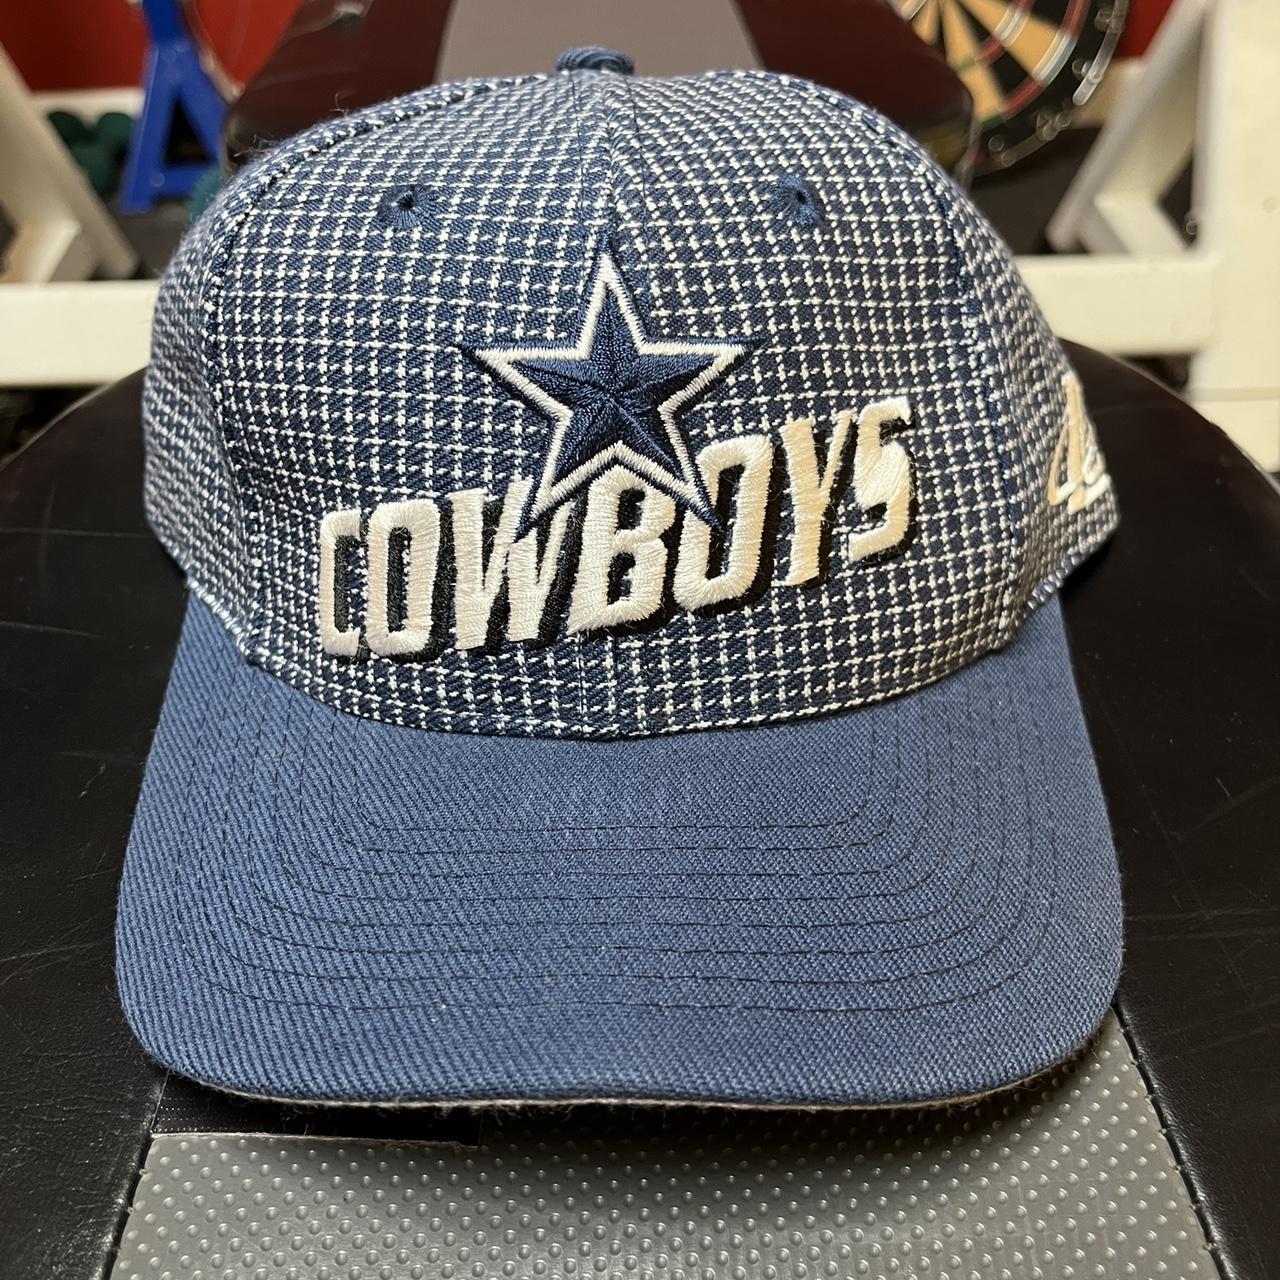 vintage dallas cowboys cap